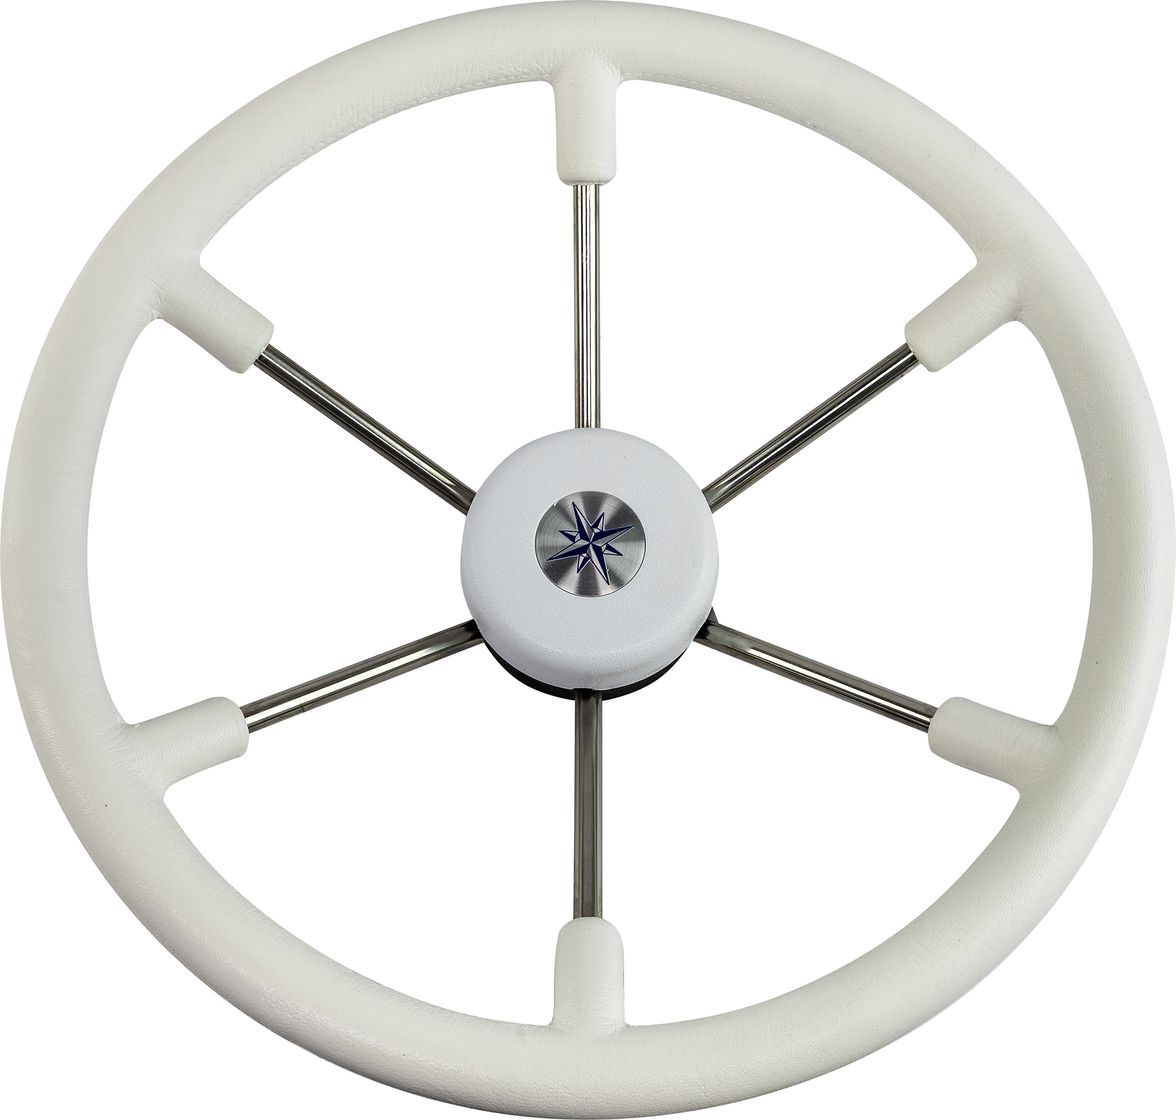 Рулевое колесо LEADER TANEGUM белый обод серебряные спицы д. 400 мм VN7400-08 рулевое колесо evolution белый обод с карбоновыми вставками more 10016468